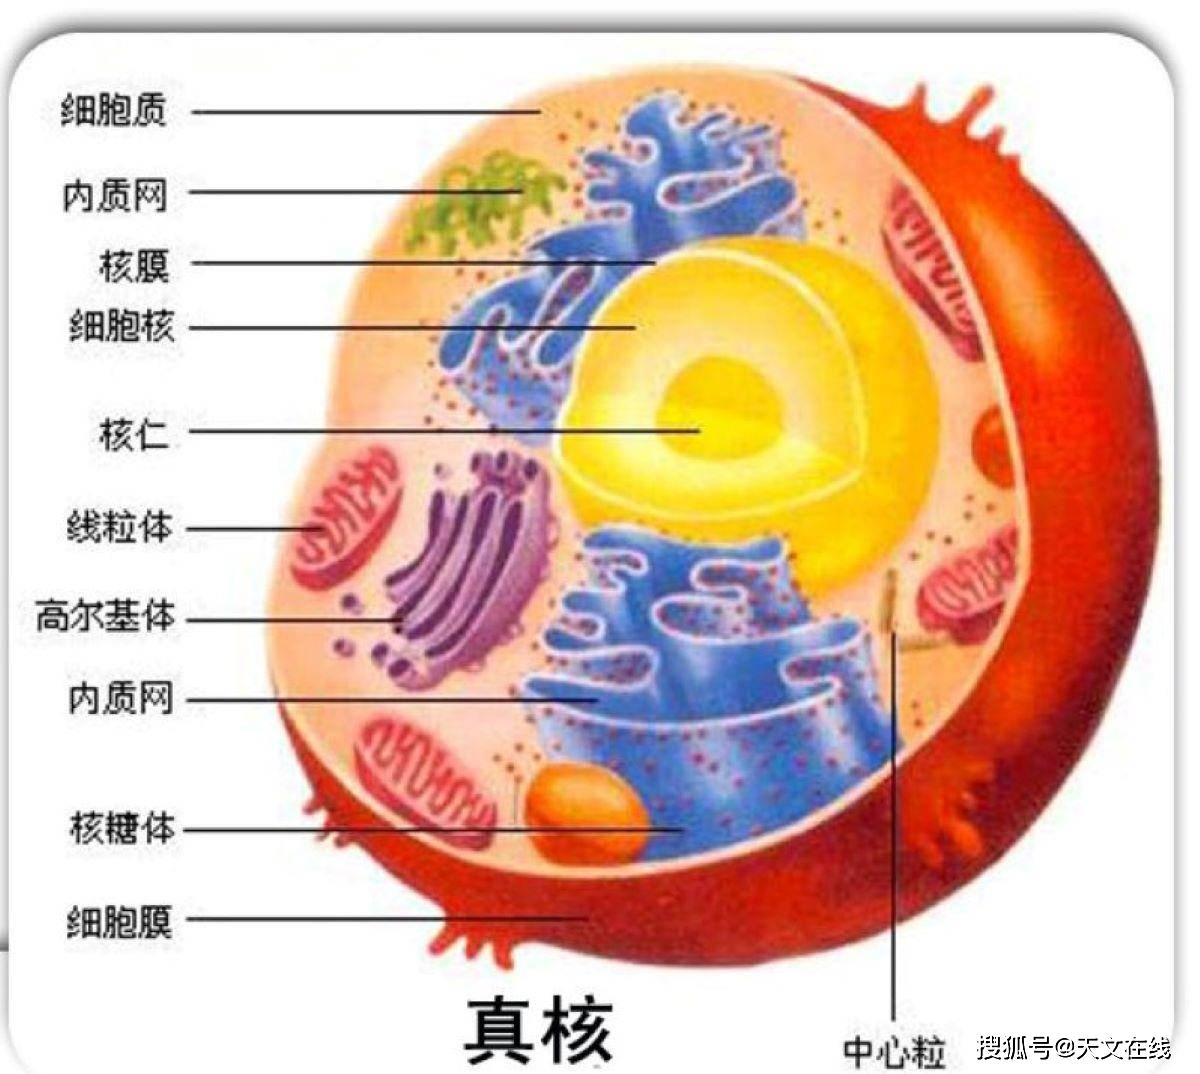 真核生物模式图(细胞核有核膜包裹),根据现有理论起源于原核生物图源